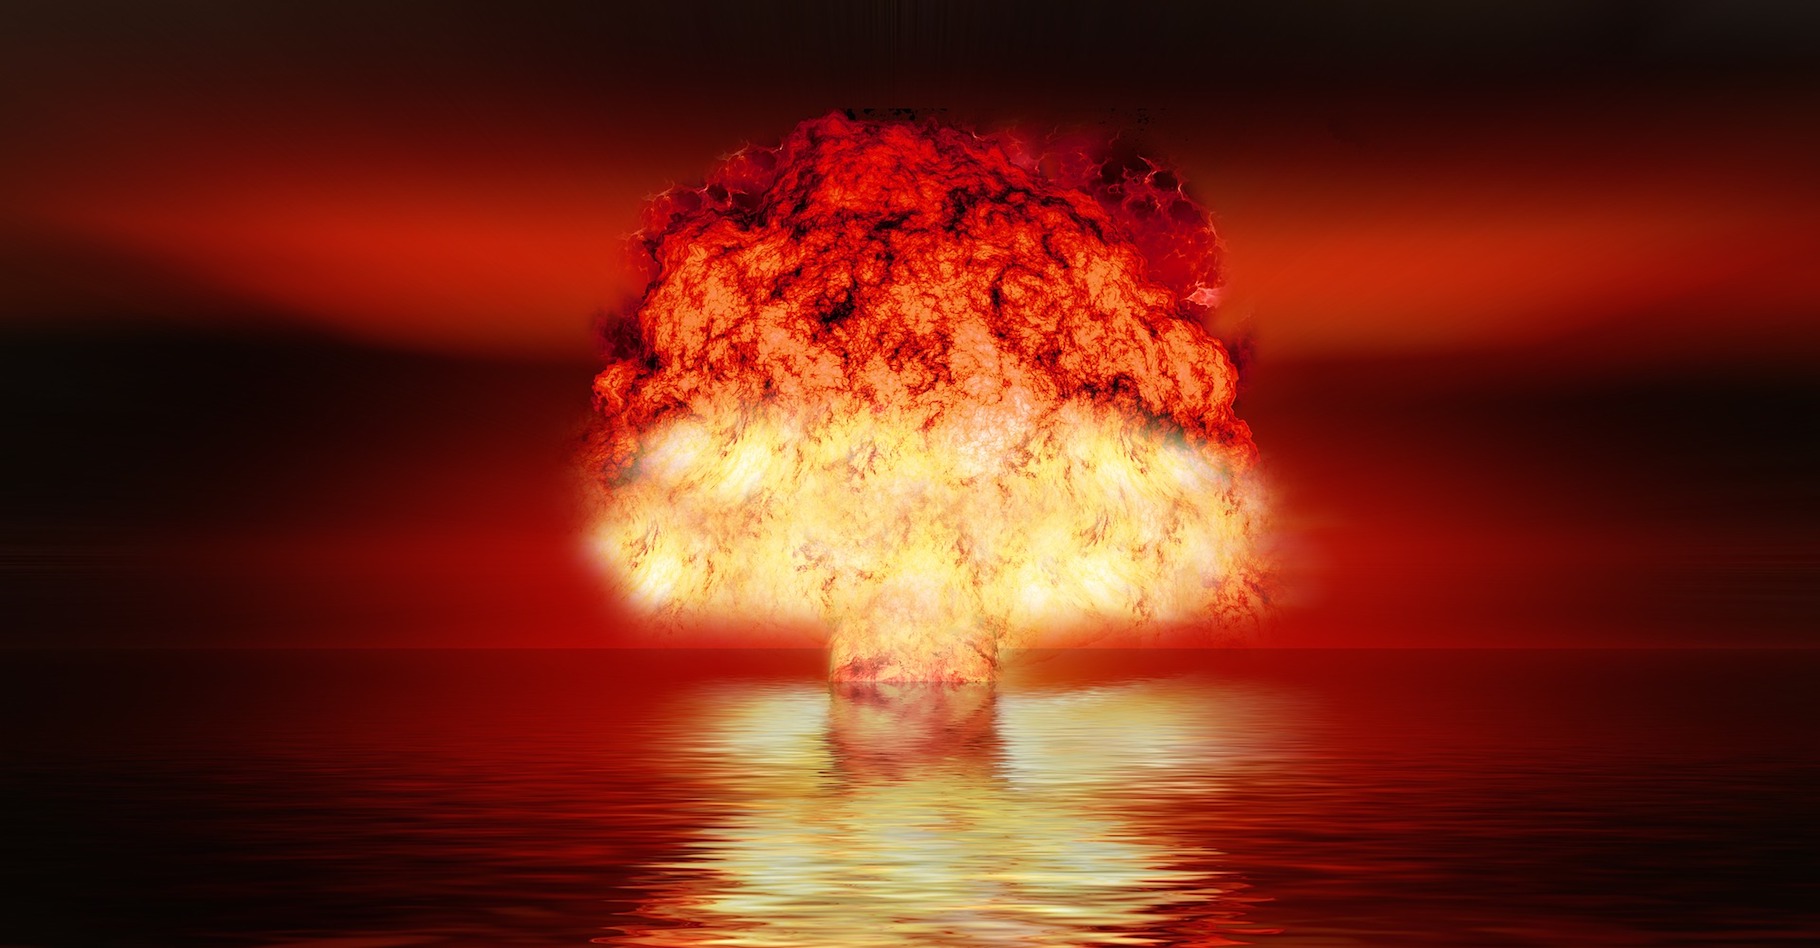 Le 3 septembre 2017, la Corée du Nord a prétendu avoir testé une bombe H. Jusqu’alors, seuls cinq pays – les États-Unis, la Russie, la Grande-Bretagne, la Chine et la France – avaient démontré leur capacité à initier une telle explosion. © geralt, Pixabay, CC0 Creative Commons